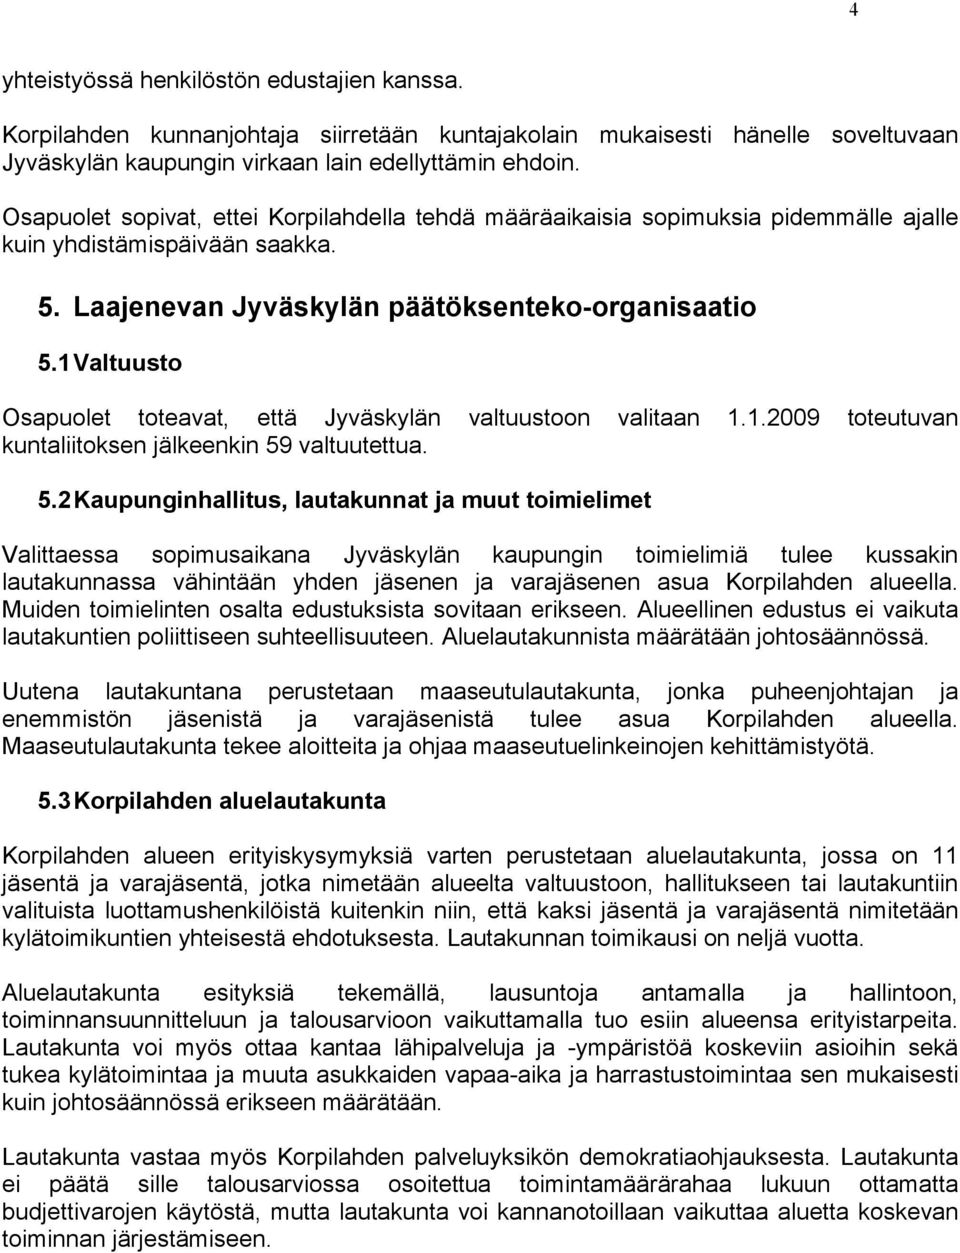 1 Valtuusto Osapuolet toteavat, että Jyväskylän valtuustoon valitaan 1.1.2009 toteutuvan kuntaliitoksen jälkeenkin 59